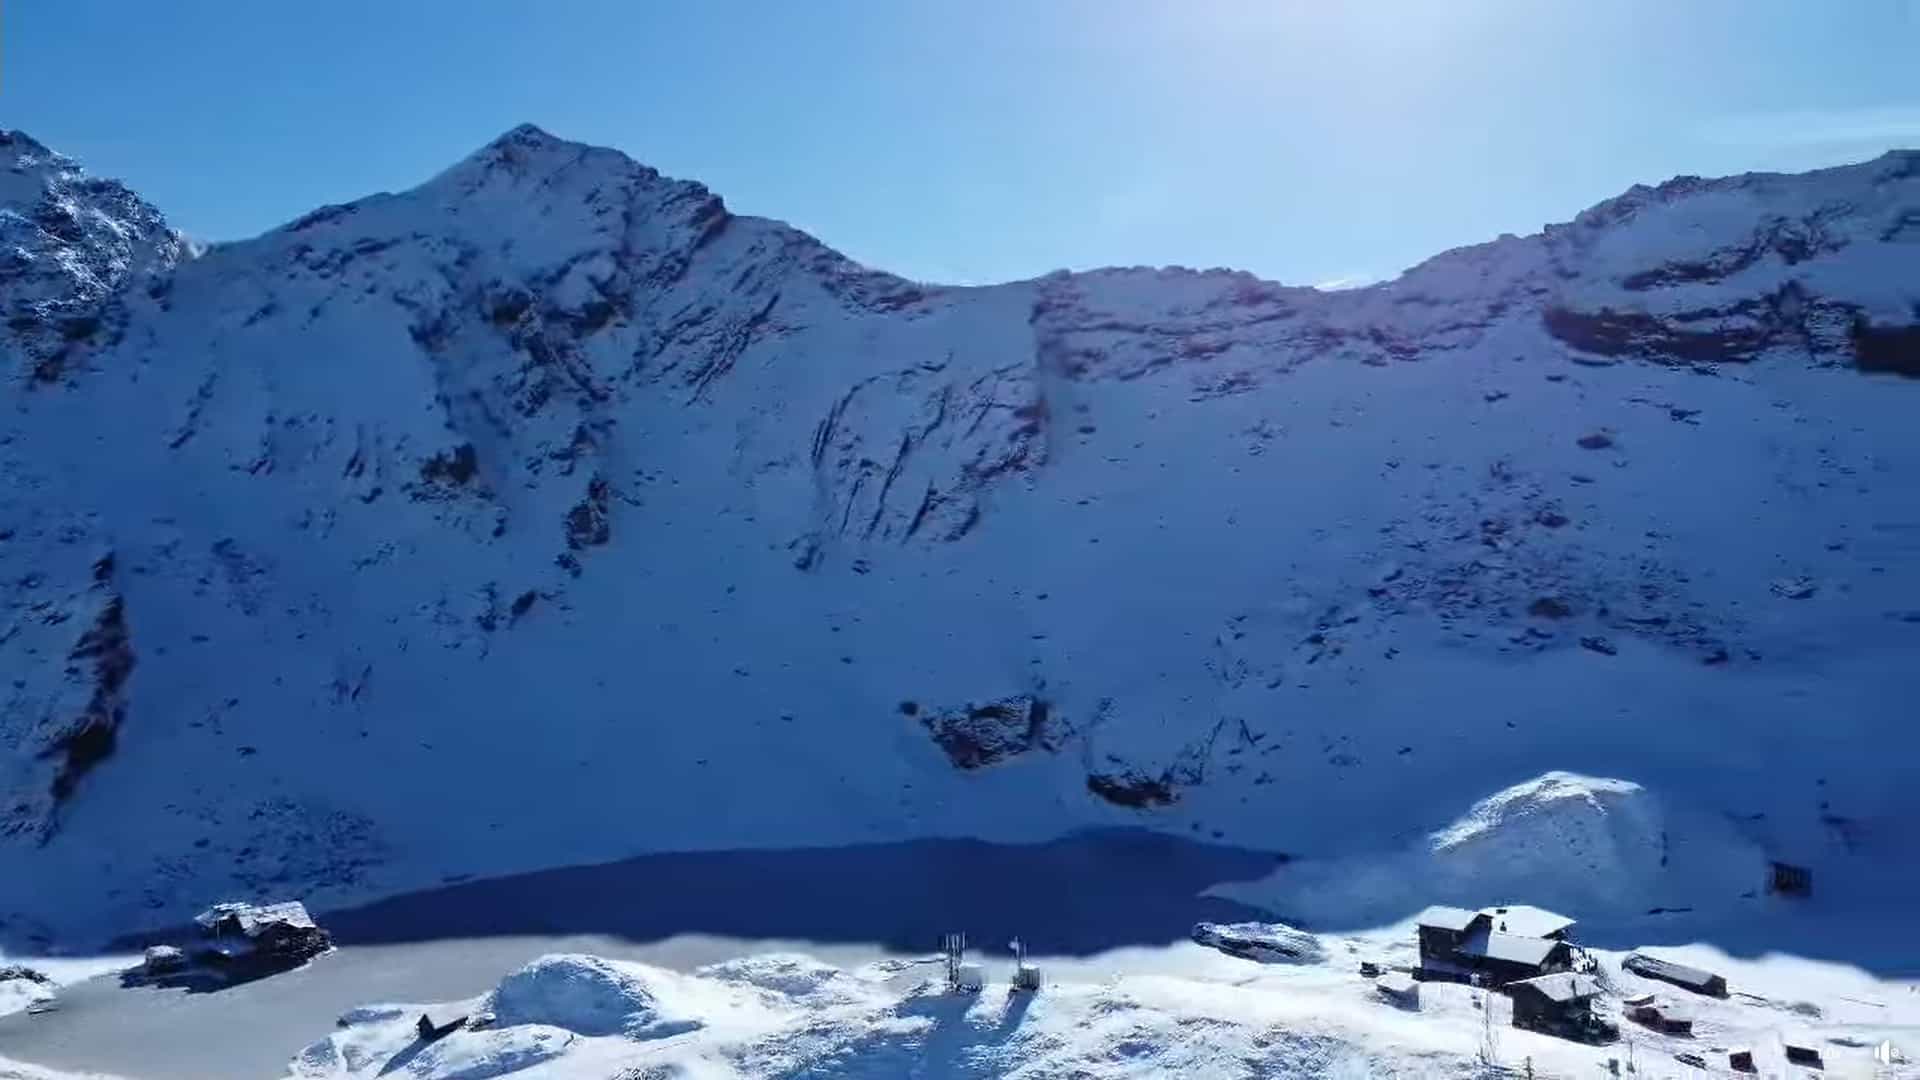 stratul de zăpadă de la bâlea lac depăşeste doi metri - este risc de avalanşă